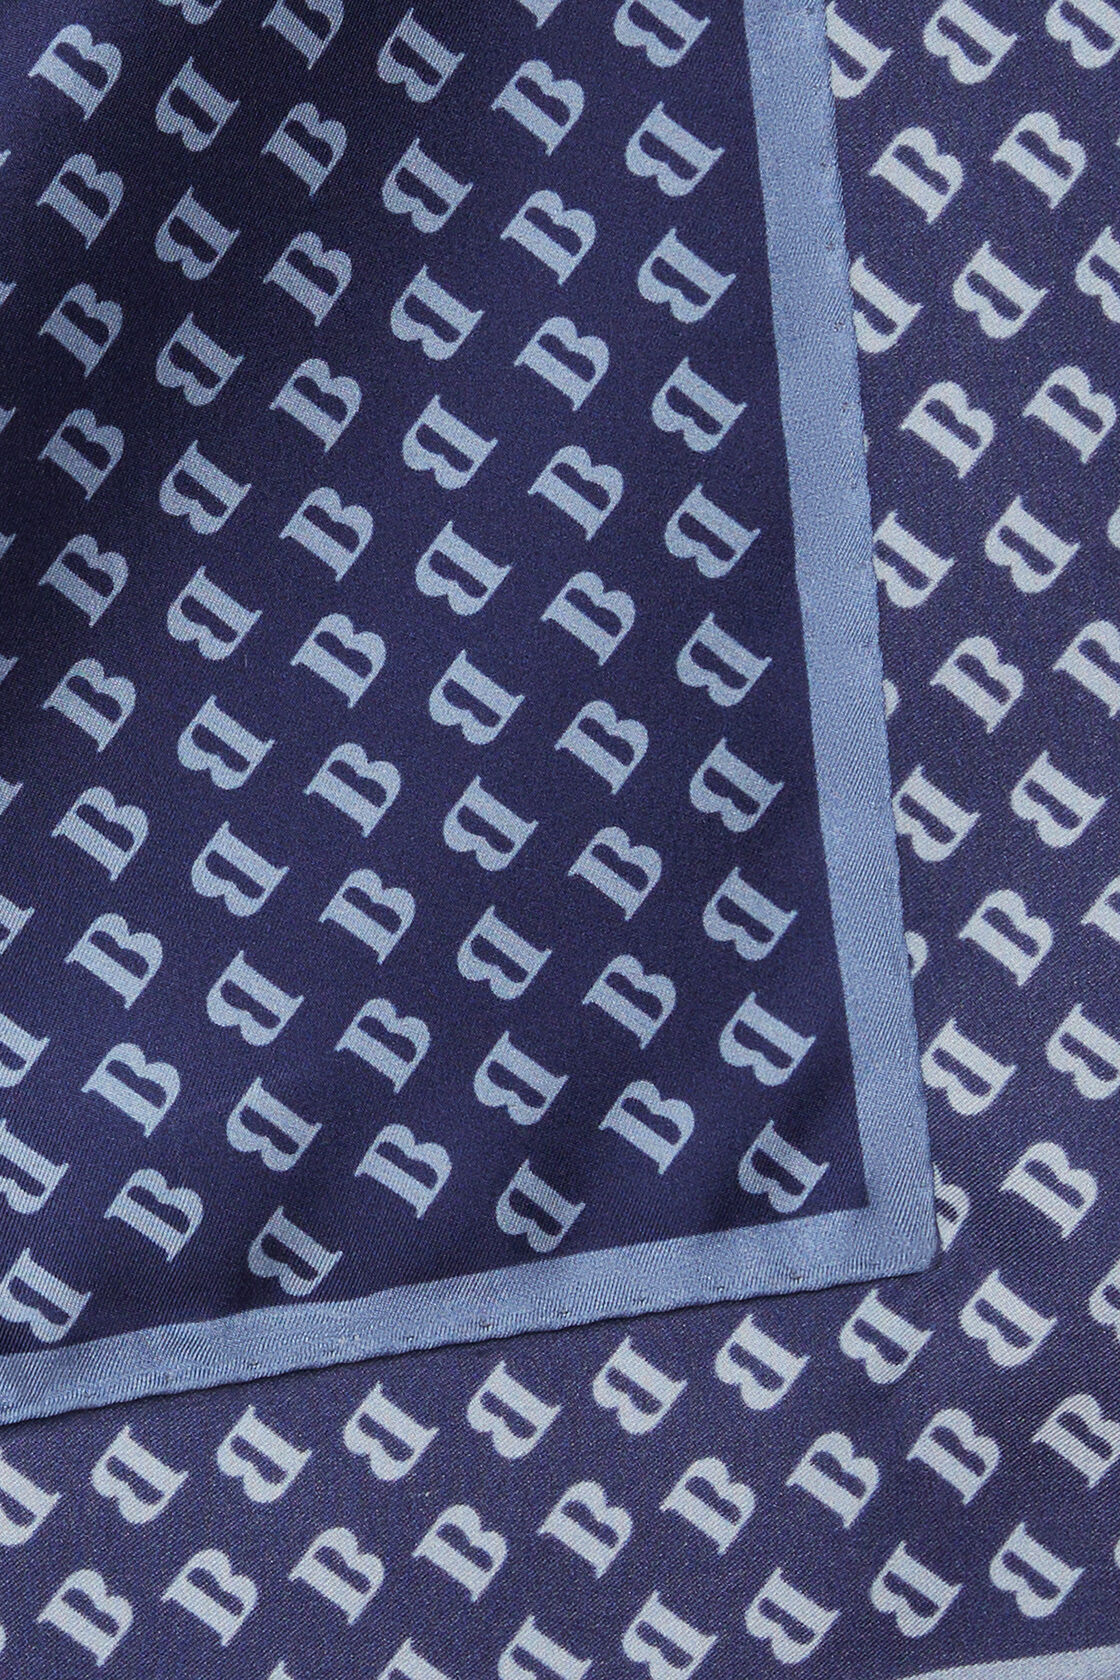 Μεταξωτό μαντηλάκι τσέπης με τυπωμένο λογότυπο σε όλη την επιφάνεια, Navy blue, hi-res